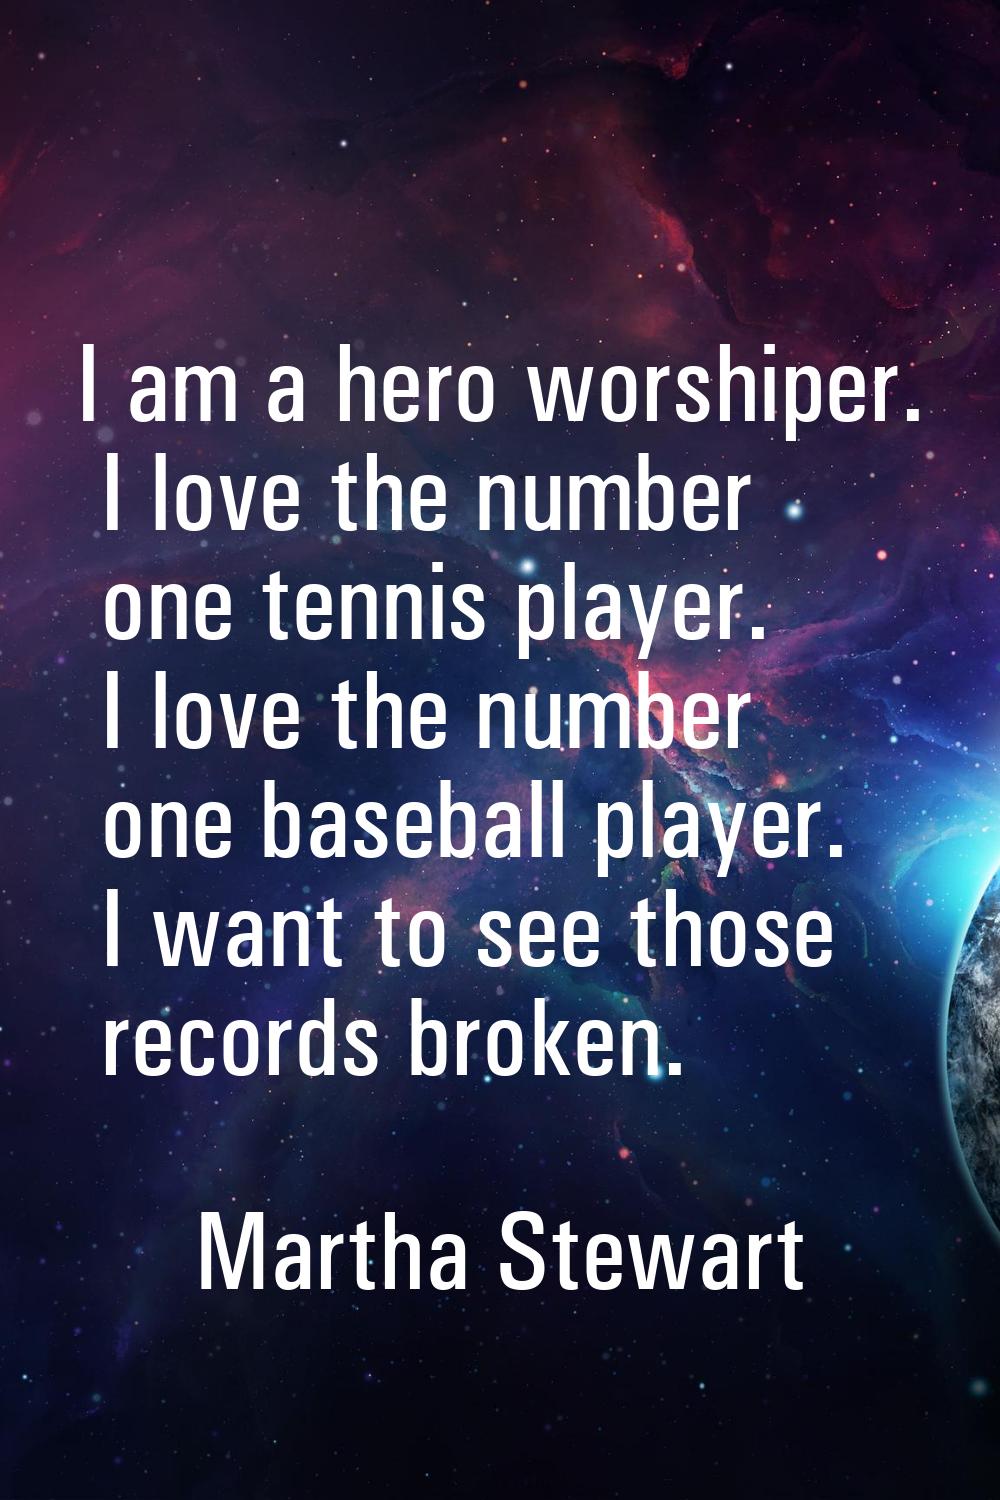 I am a hero worshiper. I love the number one tennis player. I love the number one baseball player. 